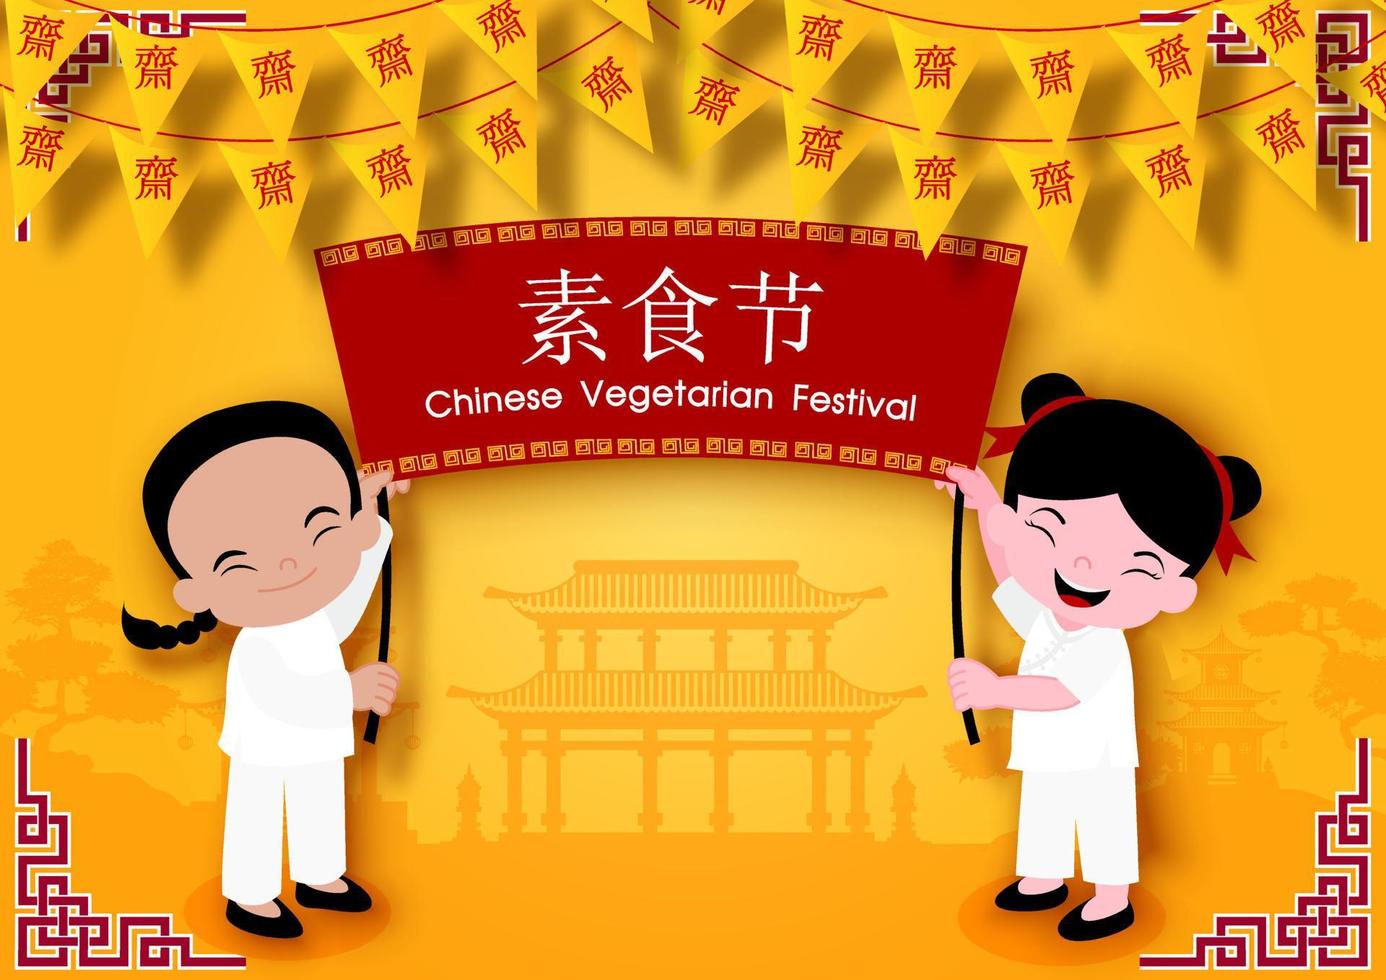 bandeira de triângulo festival vegetariano chinês com crianças segurando banner de evento no edifício antigo chinês e fundo amarelo. letras chinesas significa jejuar para adorar buda em inglês. vetor